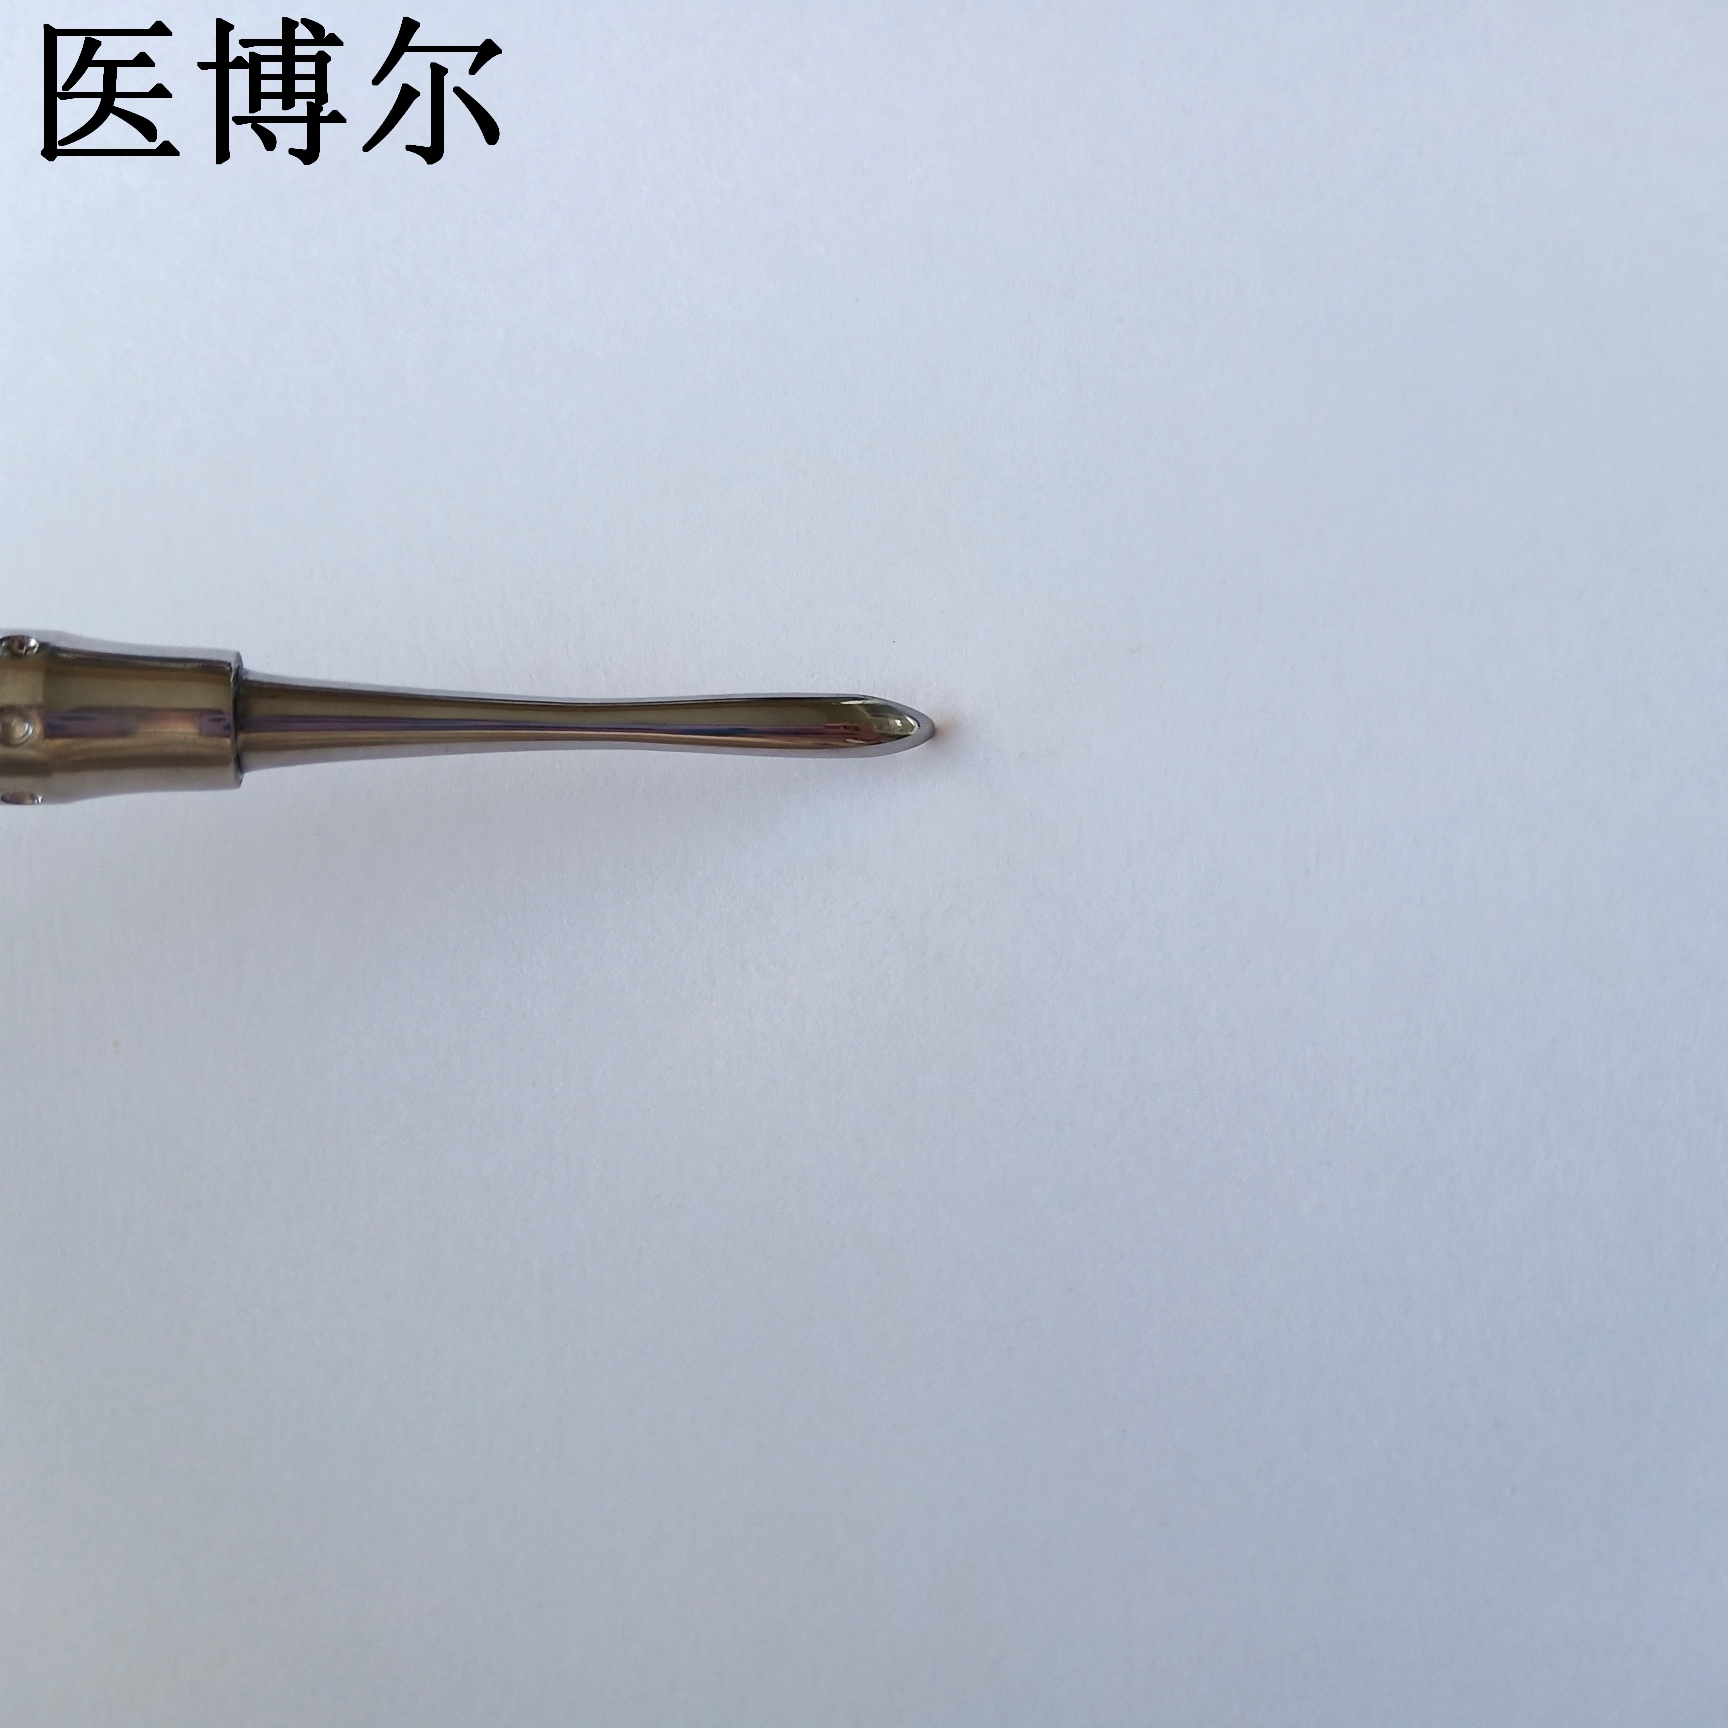 圆剥离子19cm (1)_看图王.jpg